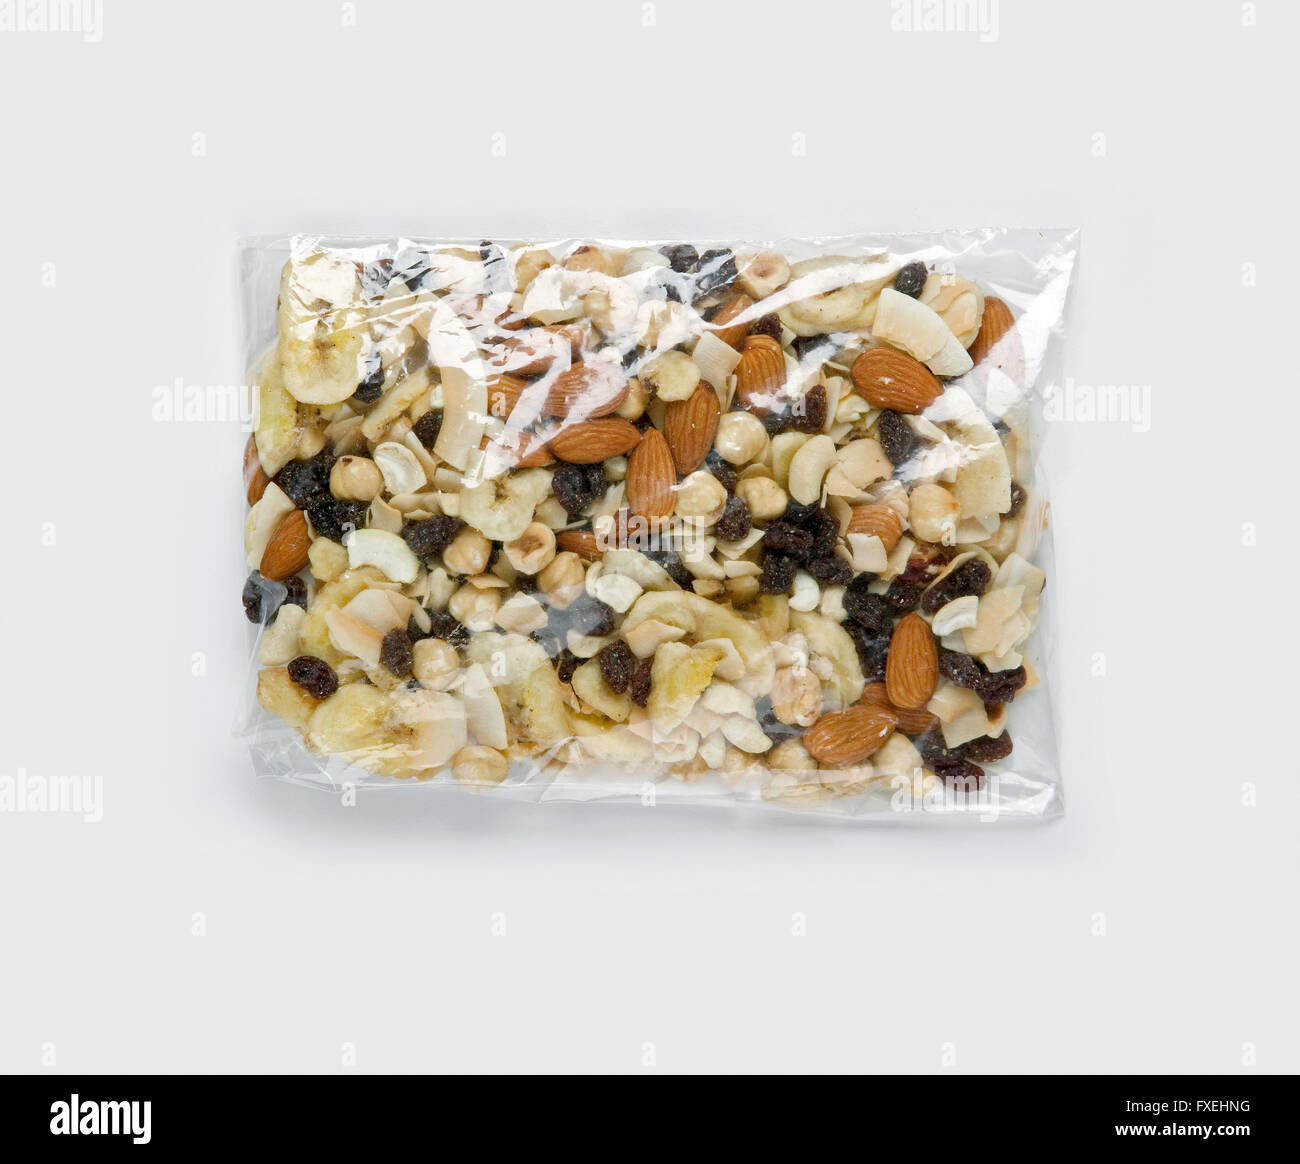 Surtido de frutos secos y nueces en bolsa de plástico transparente,  close-up Fotografía de stock - Alamy